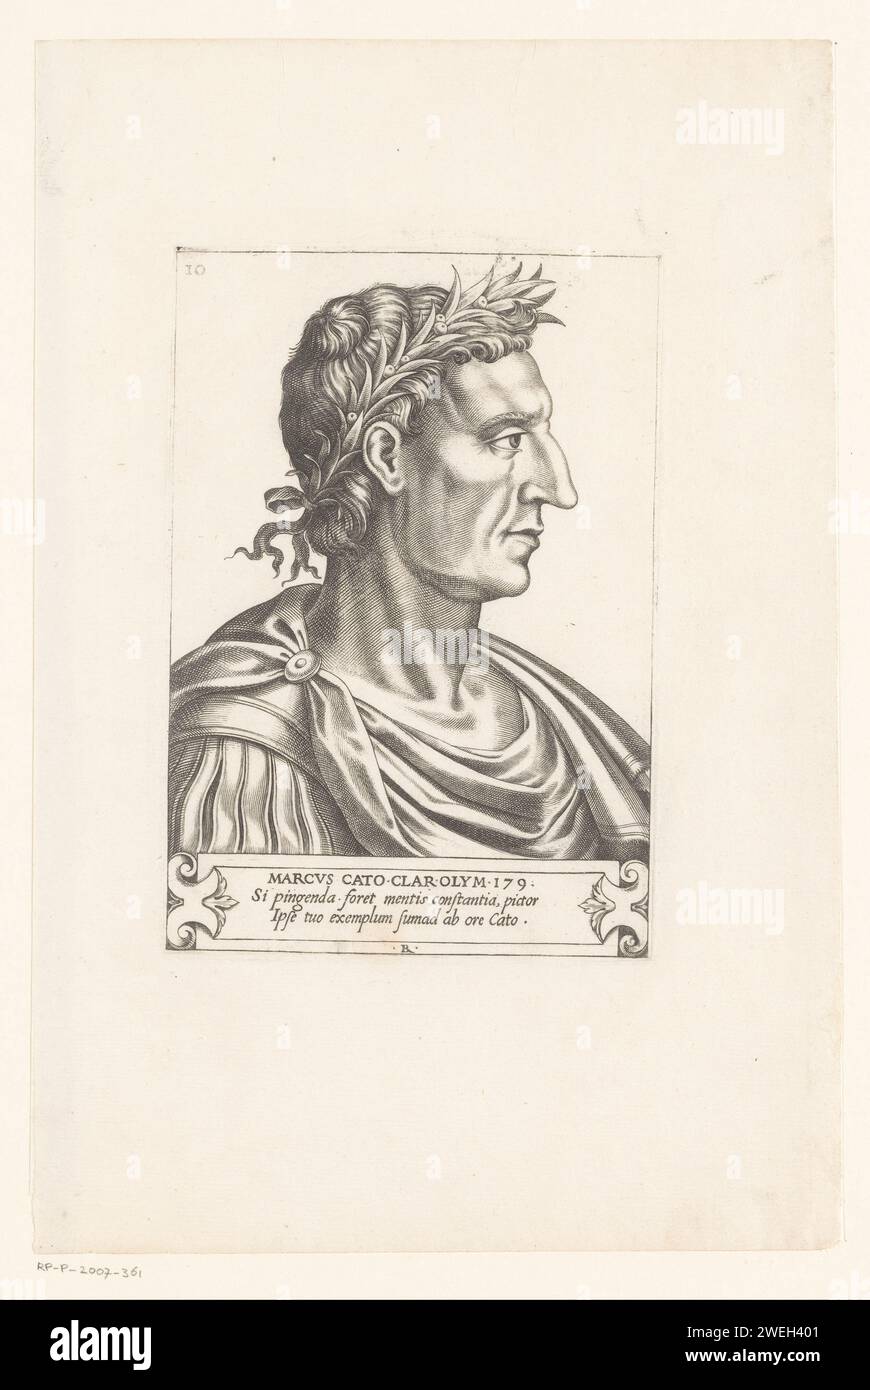 Portret Van Marcus Cato Utica più piccolo, 1566 stampe su carta che incidono persone storiche. (Storia di) Marcus Porcius Catone il giovane Foto Stock